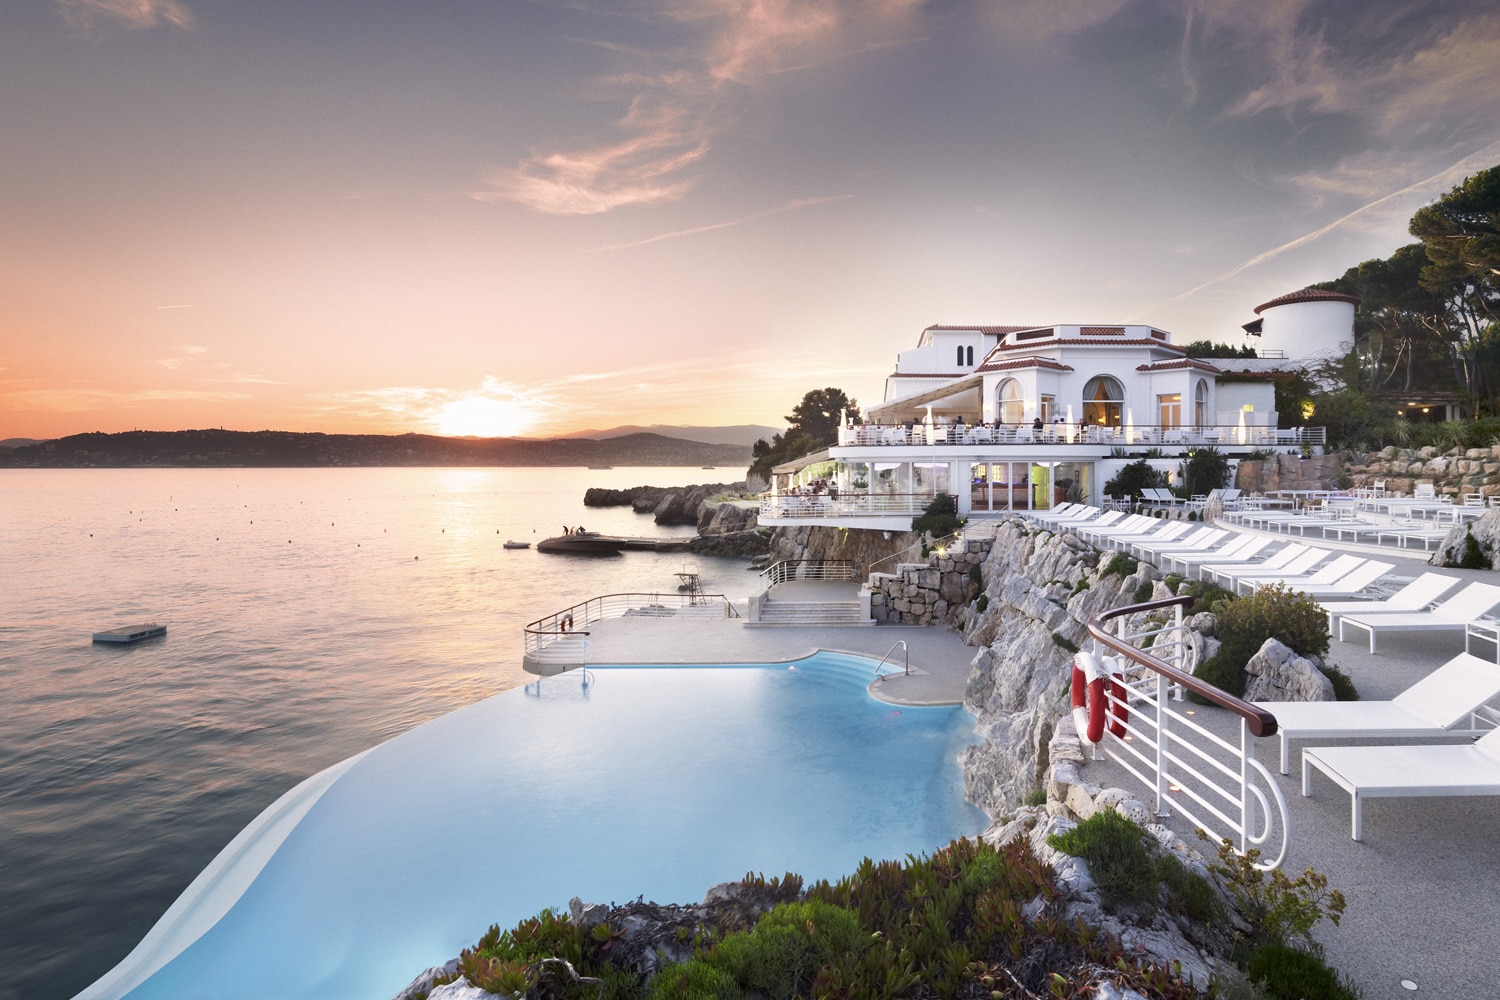 Piscines-Hotels-Hotel-du-Cap-Eden-Roc-HDCER-Swimming-pool-sunset-JMS